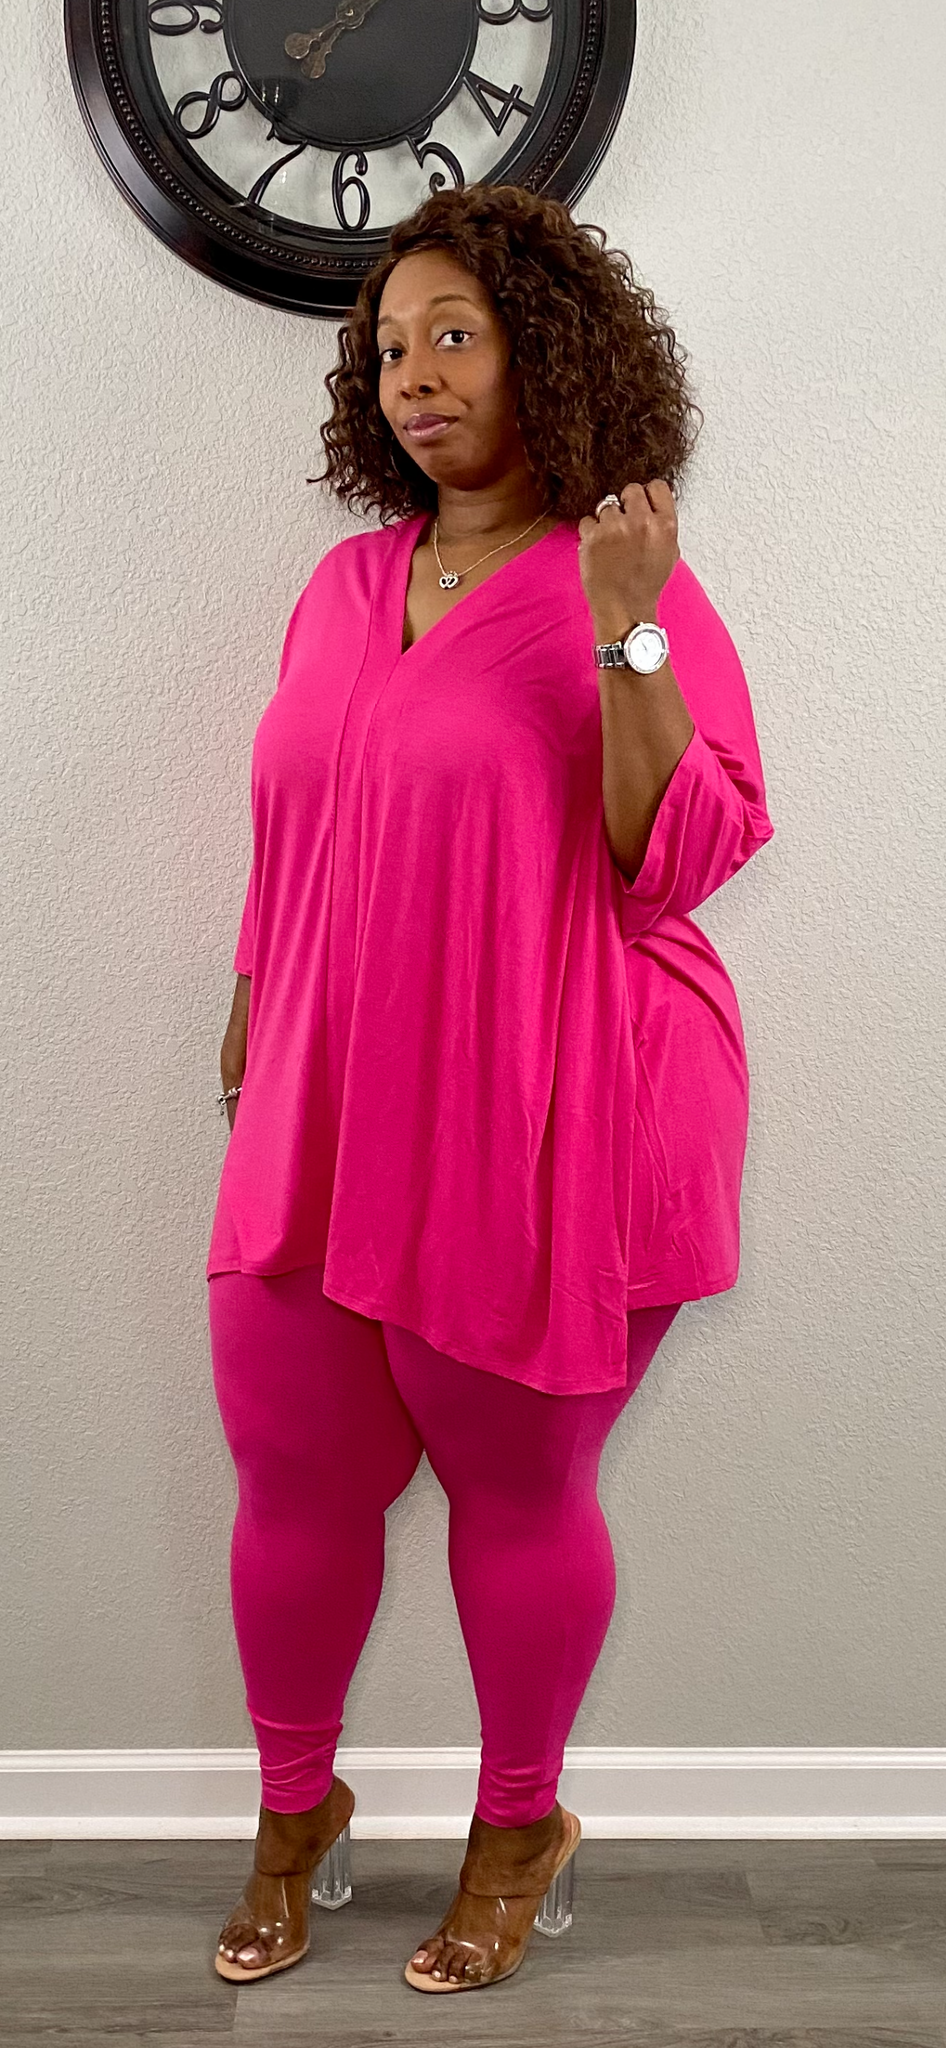 vs pink legging size large new on Mercari  Vs pink leggings, Comfy outfits  winter, Pink leggings